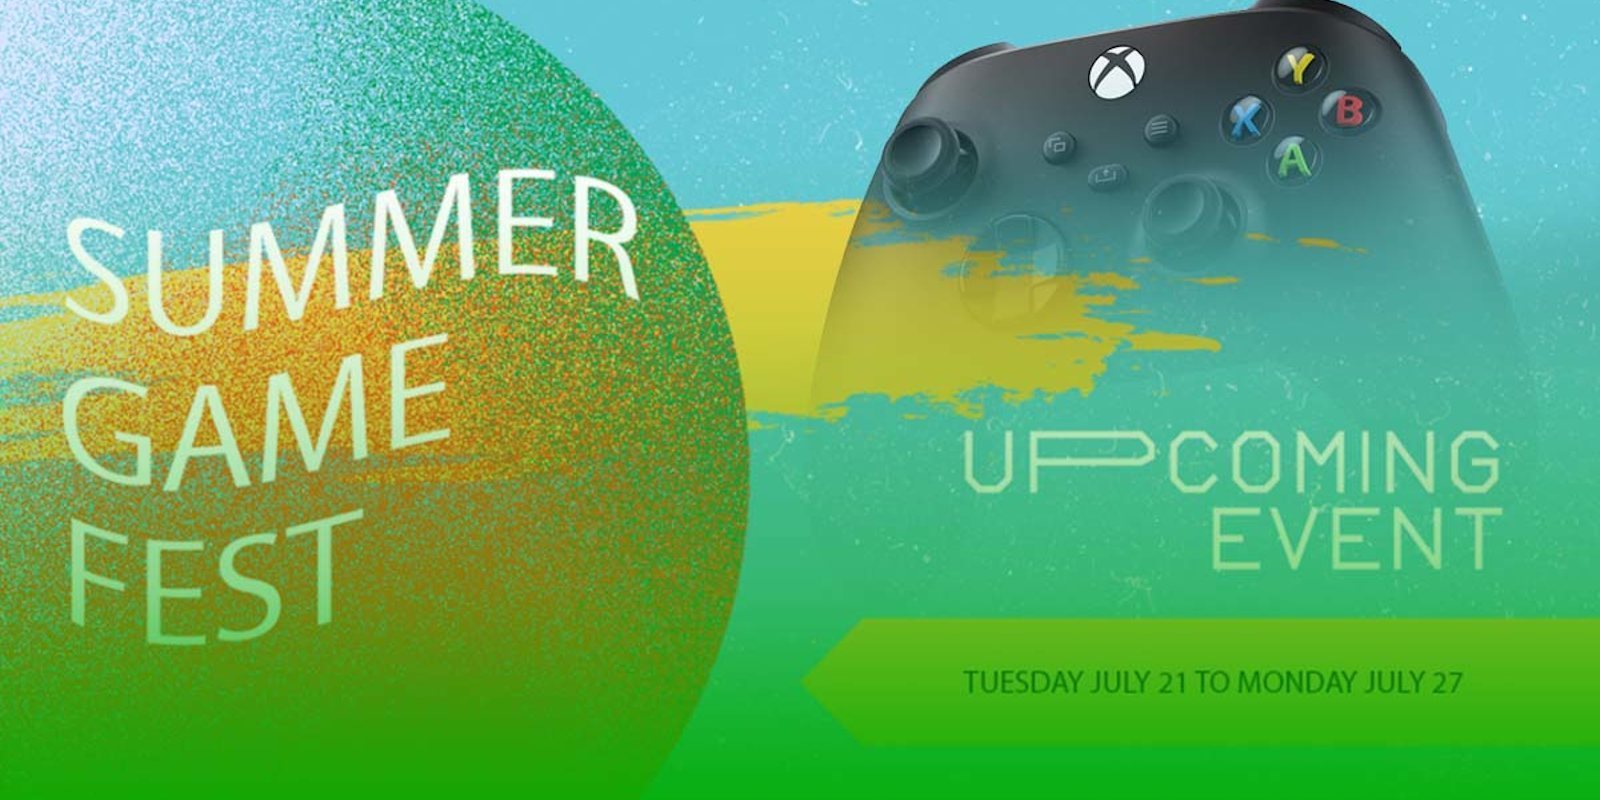 Xbox Summer Game Fest anunciado del 21 al 27 de julio; incluirá más de 60 demostraciones